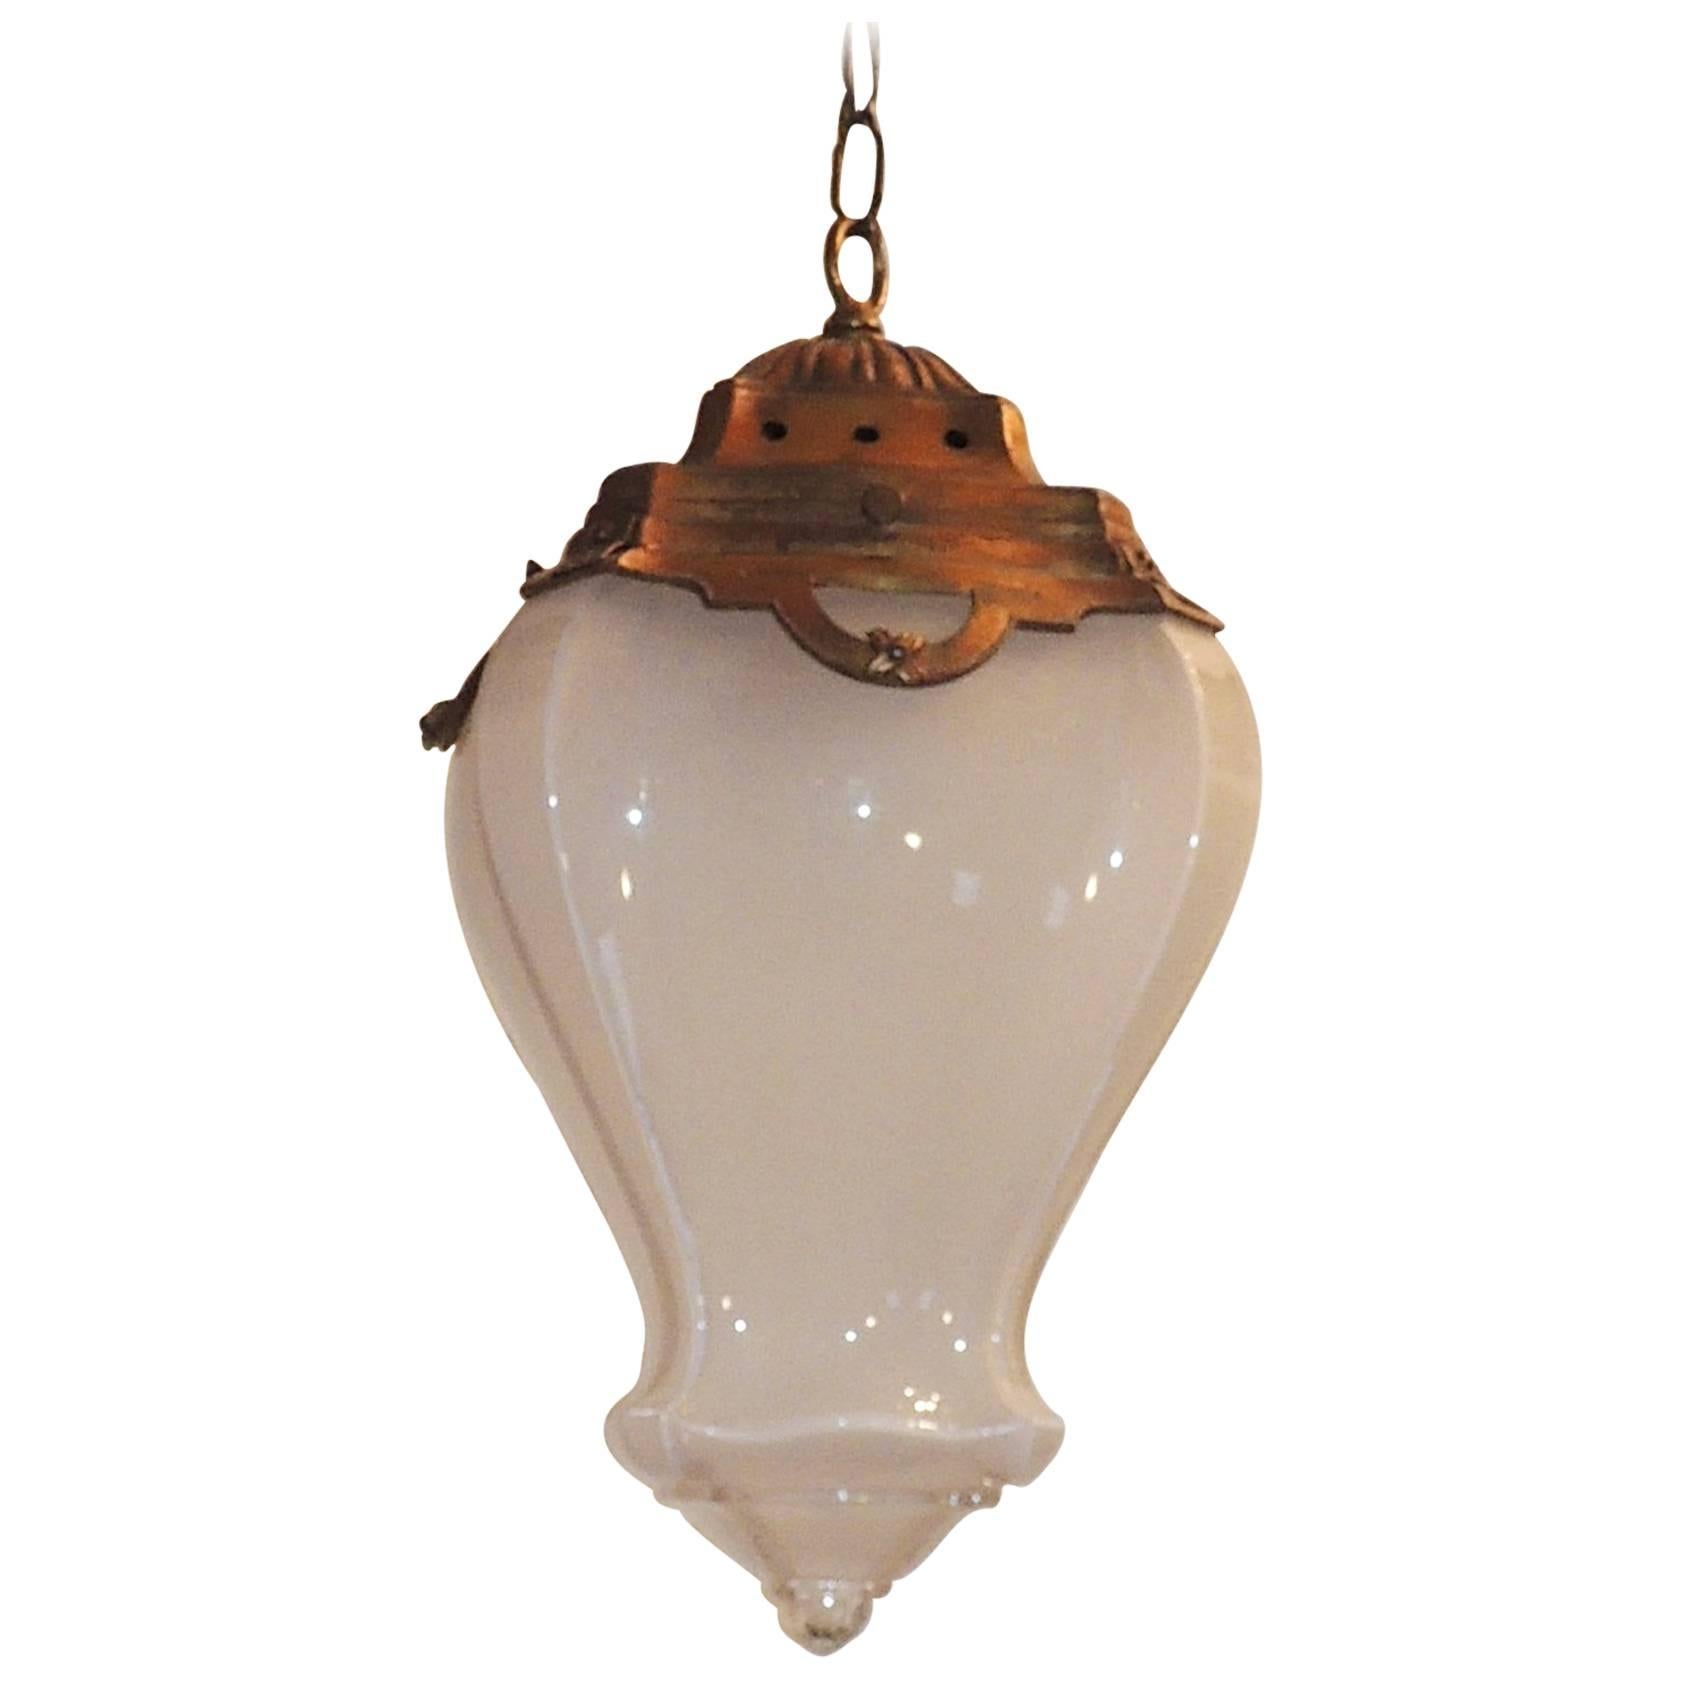 Wonderful French Bronze Original Milk Curved Glass Chandelier Lantern Fixture